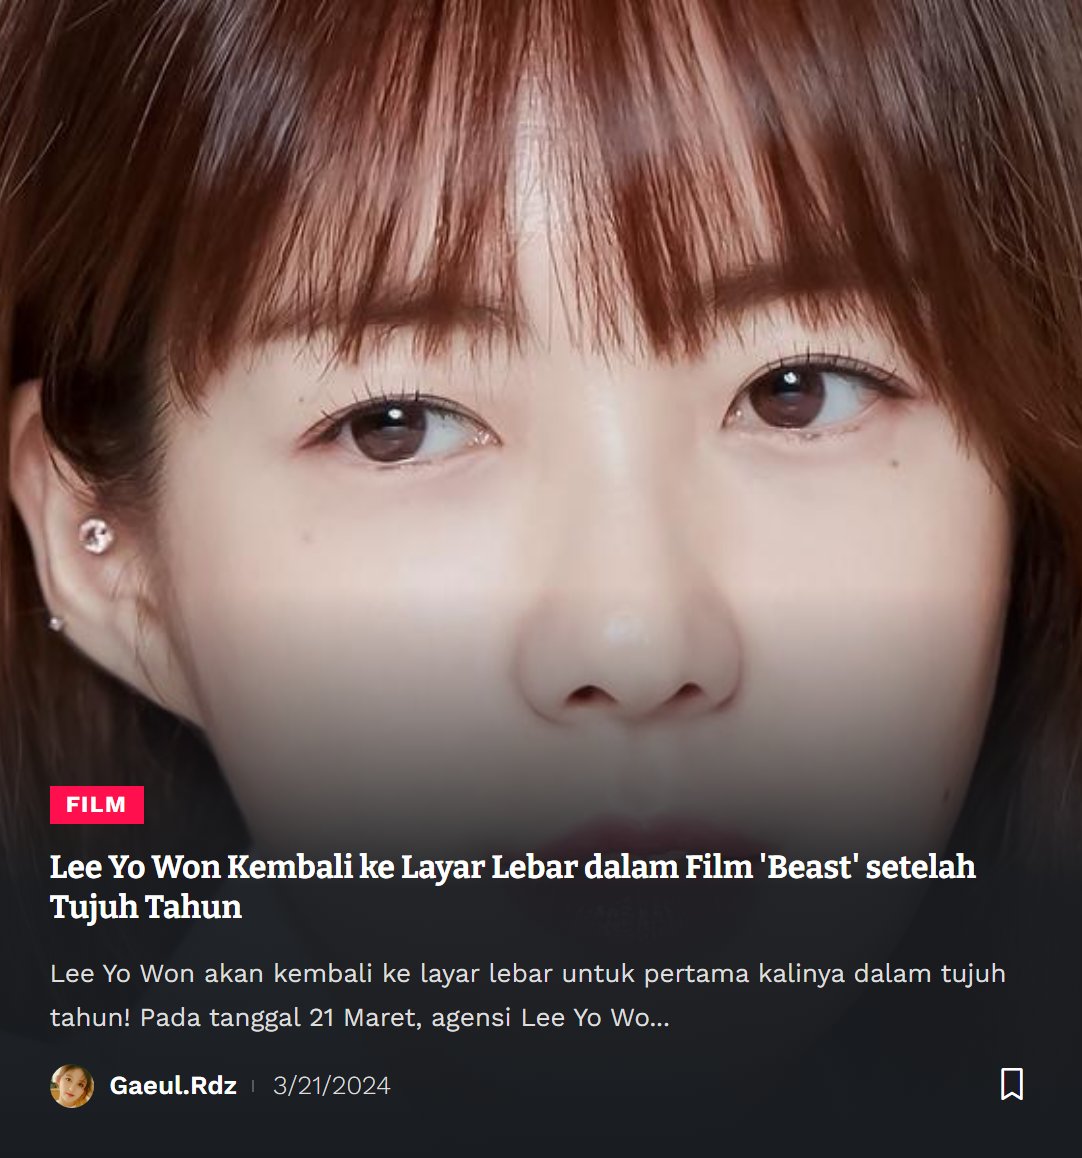 #LeeYoWon
#BeastMovie
#ActressLife
#KoreanCinema
#SisterhoodStory
✨gaeul.rdz